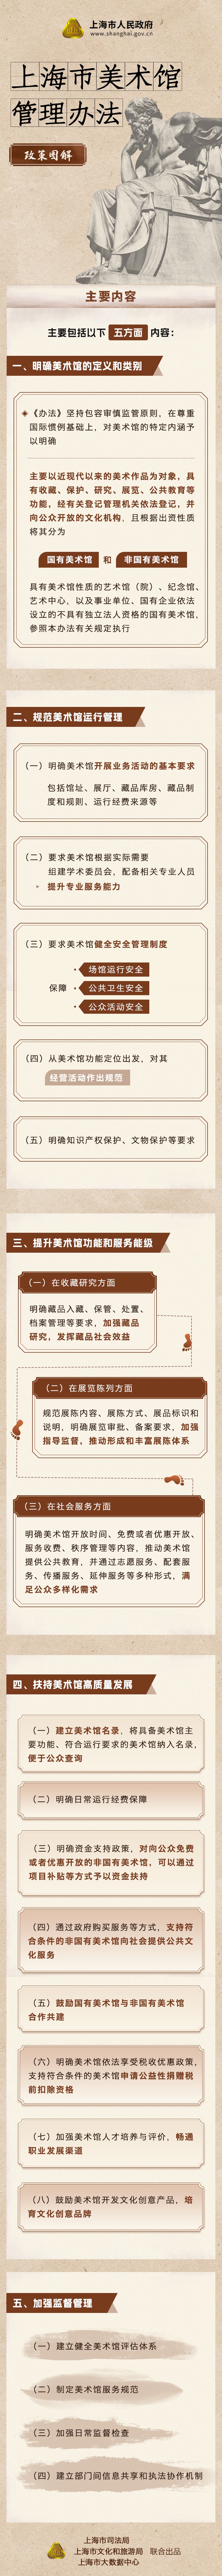 一图读懂《上海市美术馆管理办法》.jpg